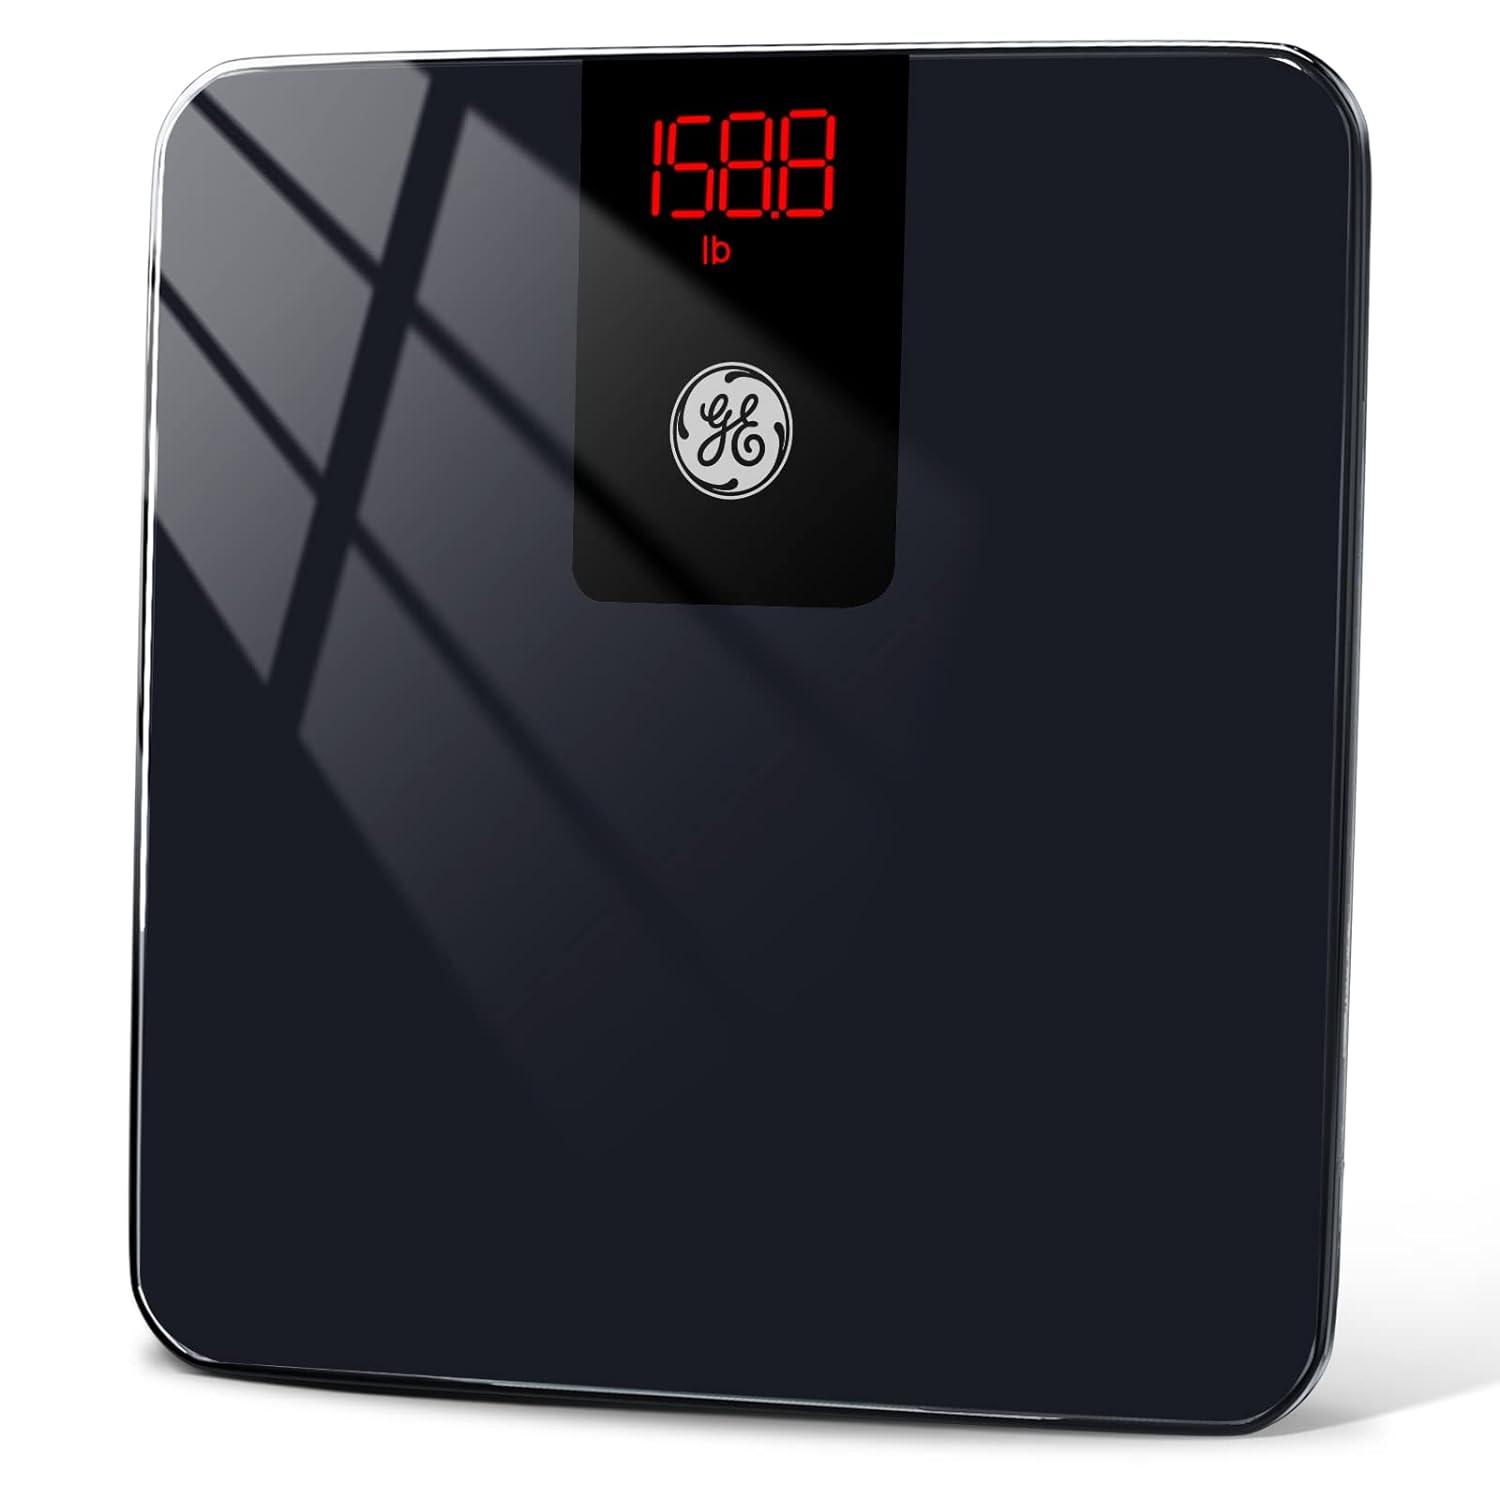 Báscula digital de baño, impermeable, antideslizante, negro, altamente  precisa, con diseño de esquina redonda, mide un peso de hasta 330 libras,  LCD